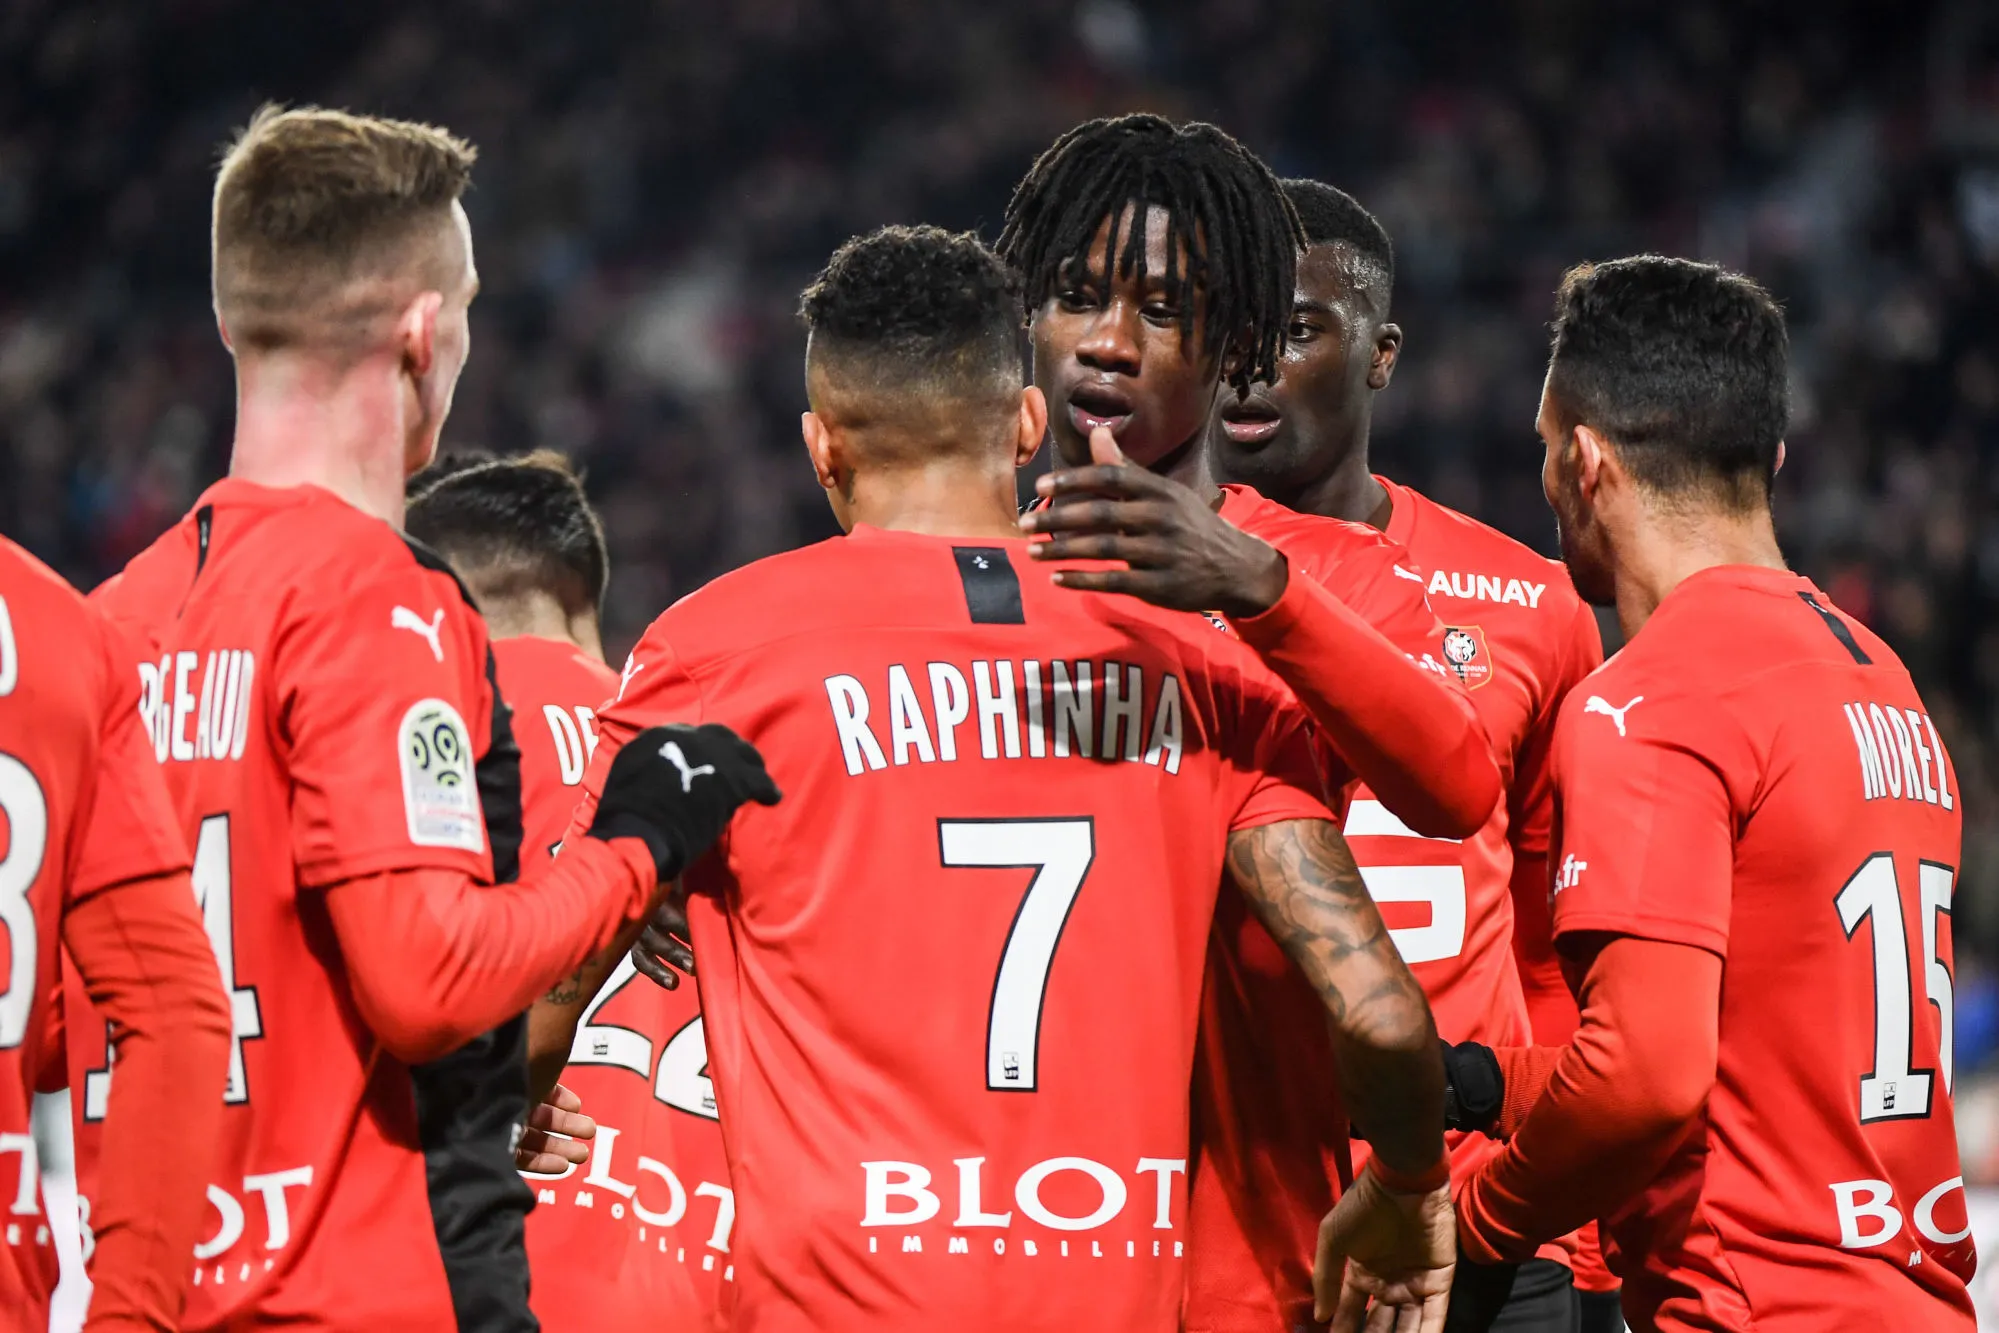 Pronostic Rennes Montpellier : Analyse, prono et cotes du match de Ligue 1